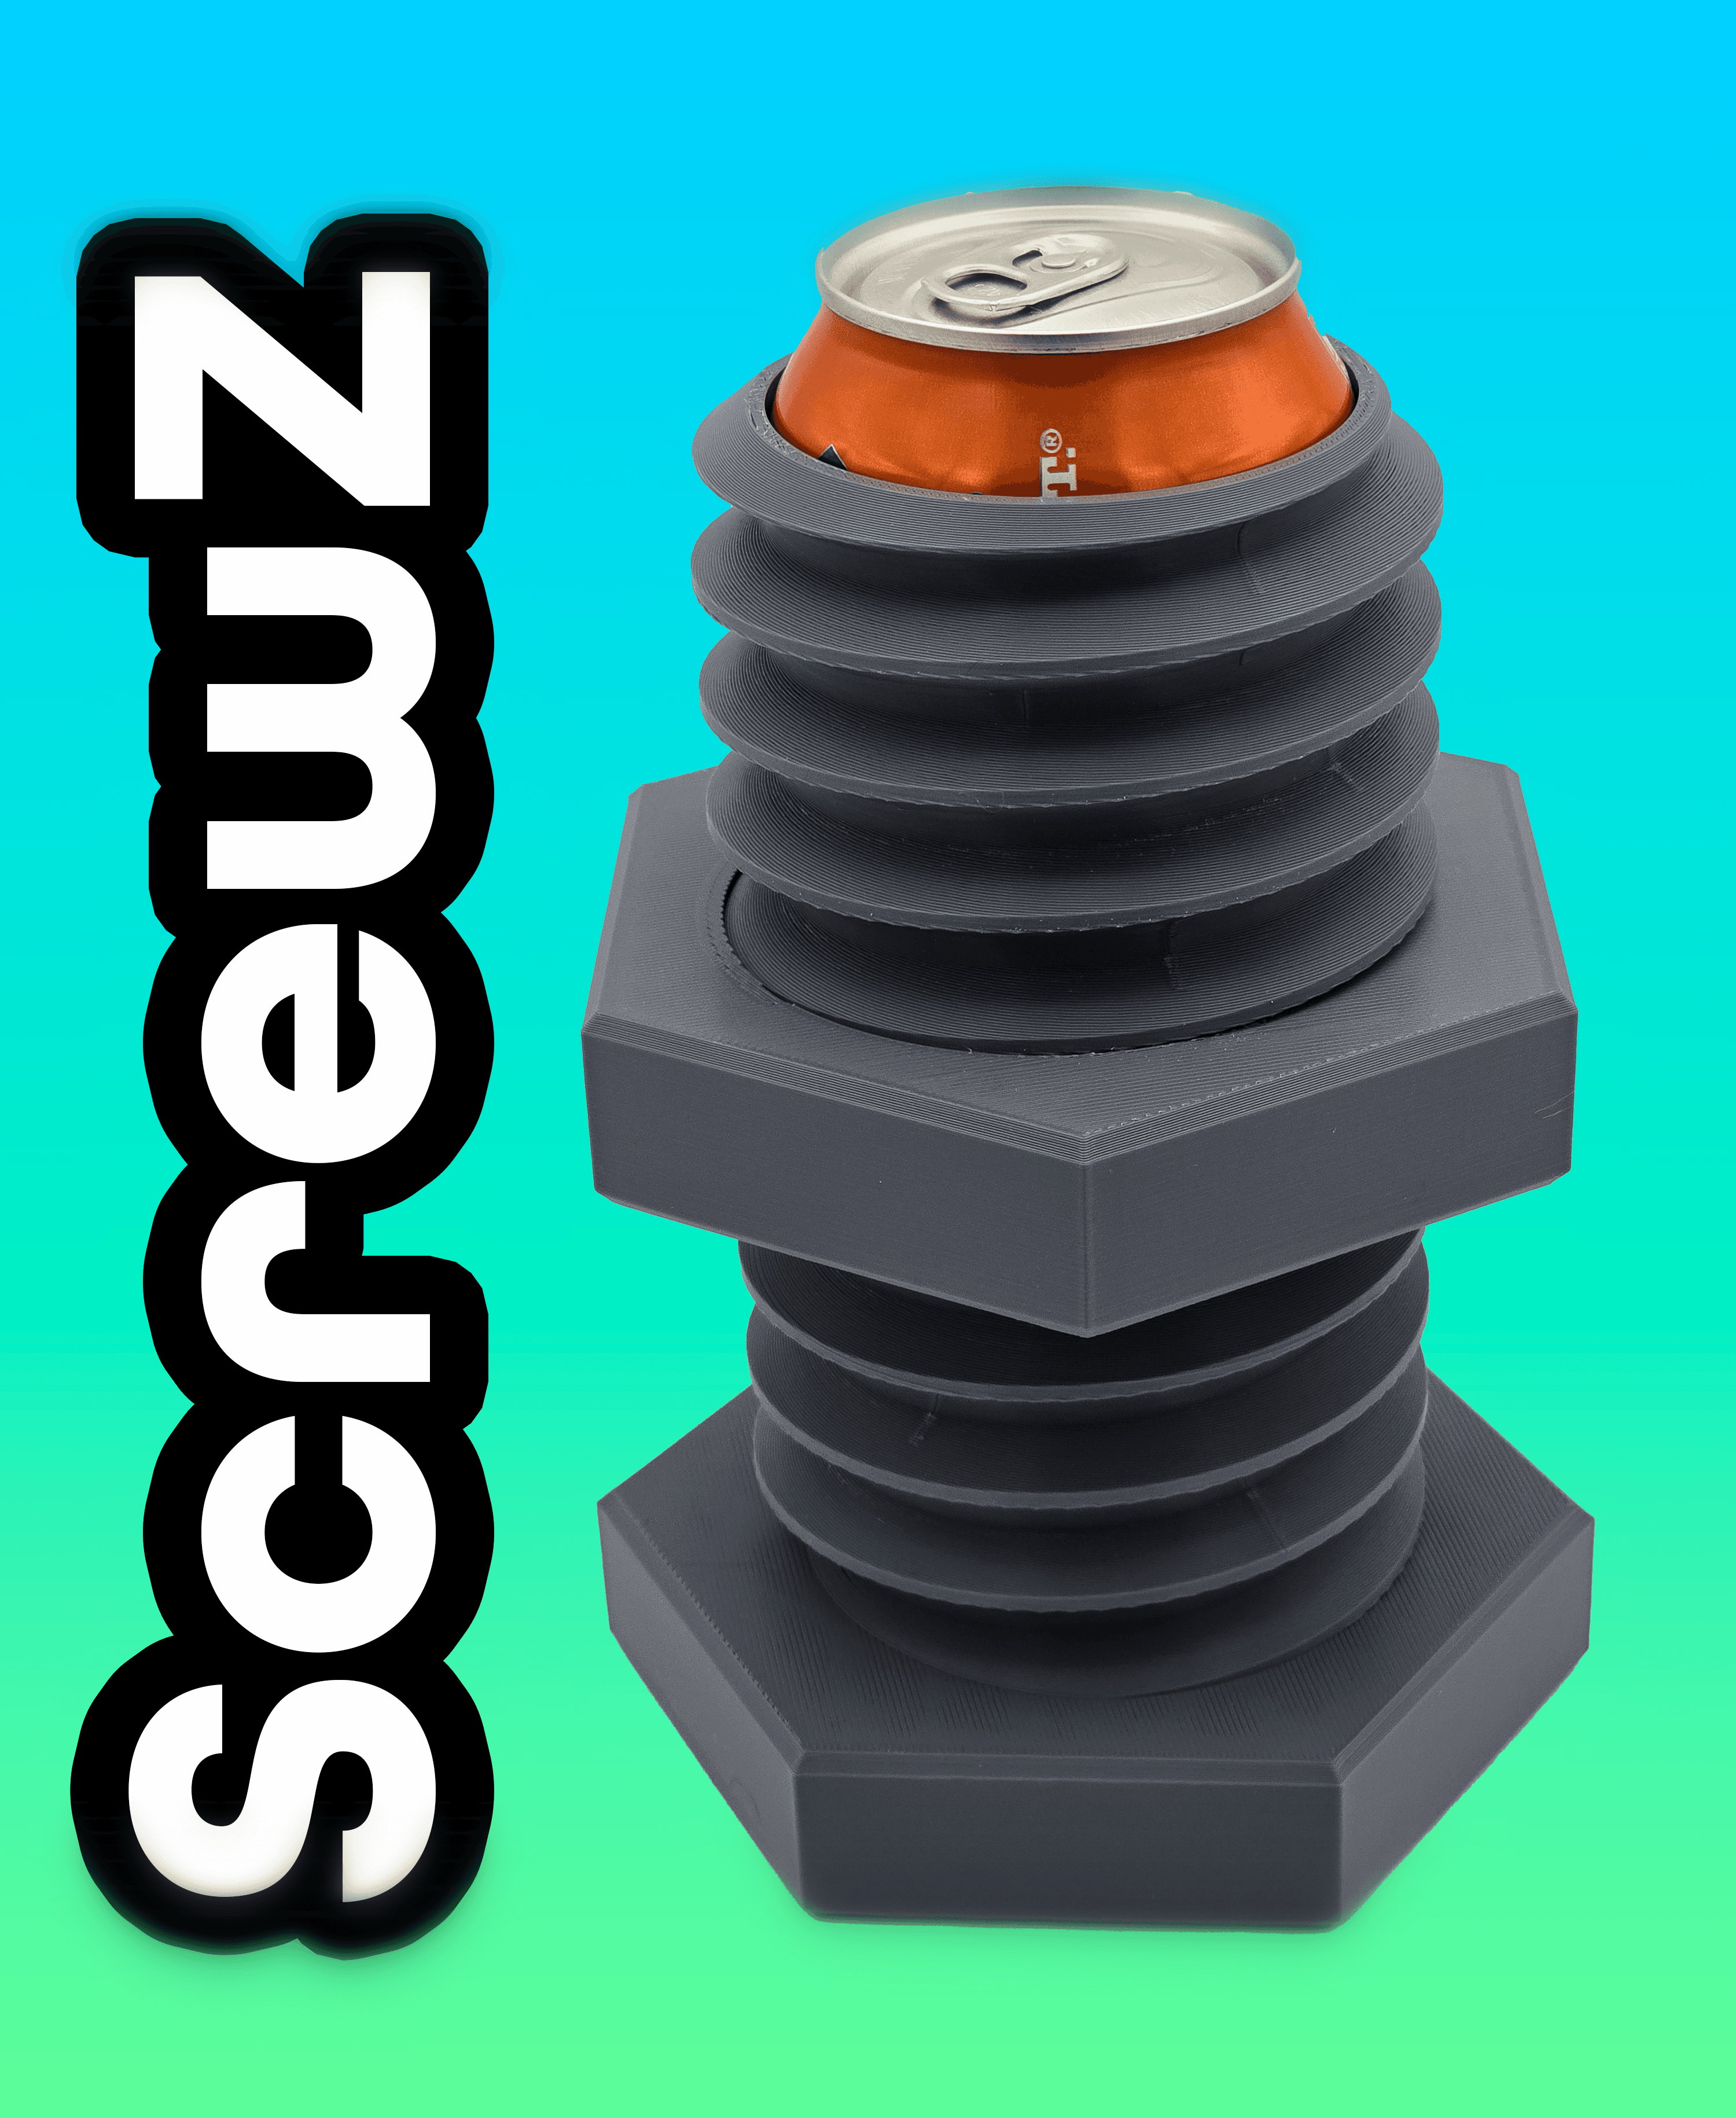 ScrewZ Koozie - The Functional Screw Can Koozie 3d model